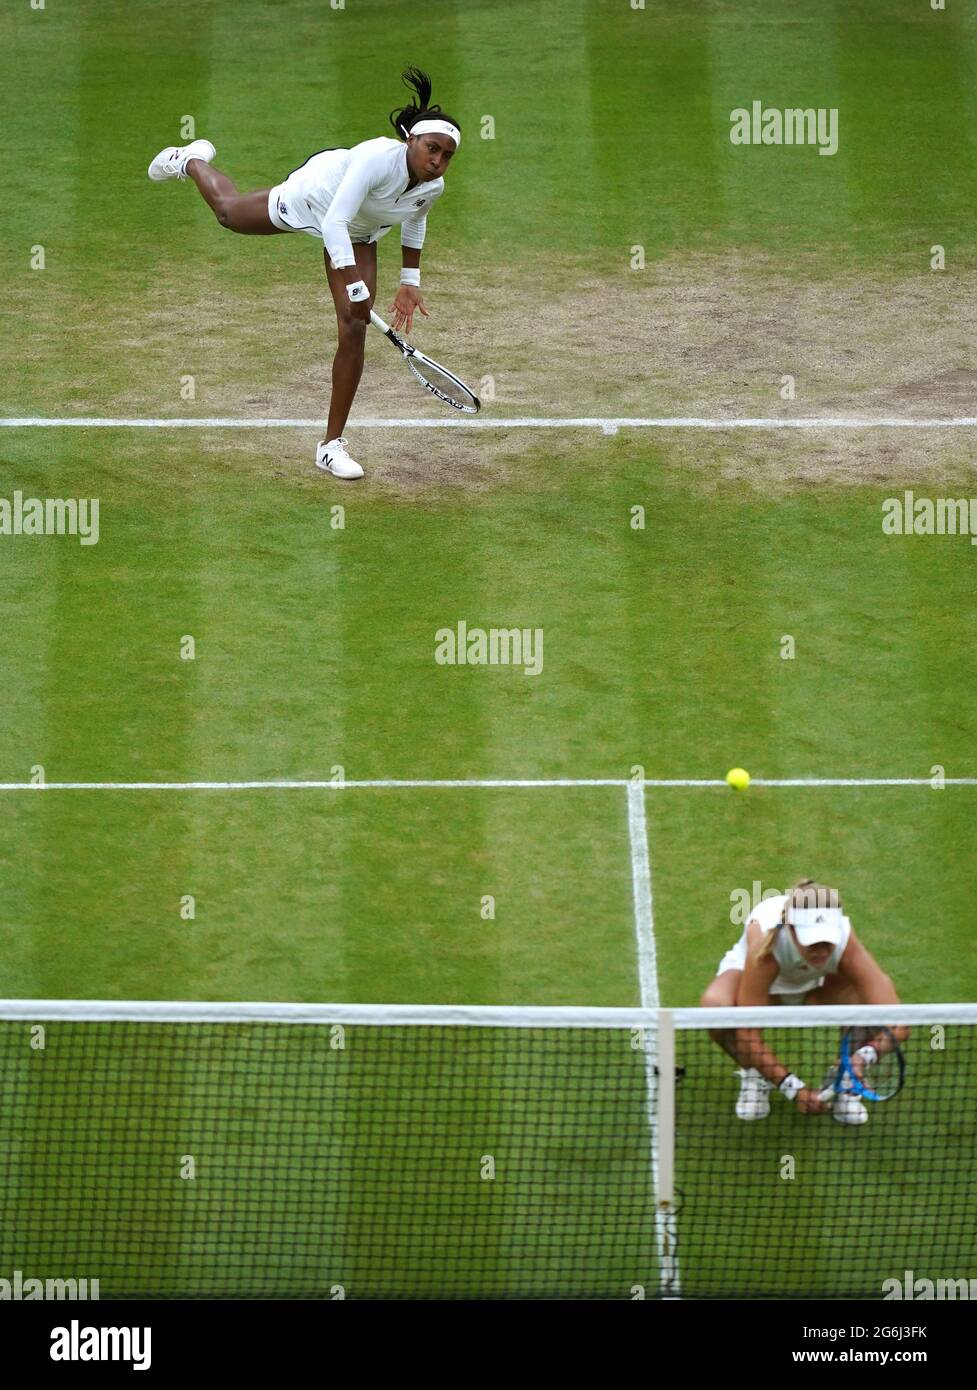 Coco Gauff (links) und Caty McNally in Aktion während ihres Doppelmatches der Damen in der dritten Runde gegen Veronika Kudermetova und Elena Vesnina am achten Tag von Wimbledon im All England Lawn Tennis and Croquet Club in Wimbledon. Bilddatum: Dienstag, 6. Juli 2021. Stockfoto